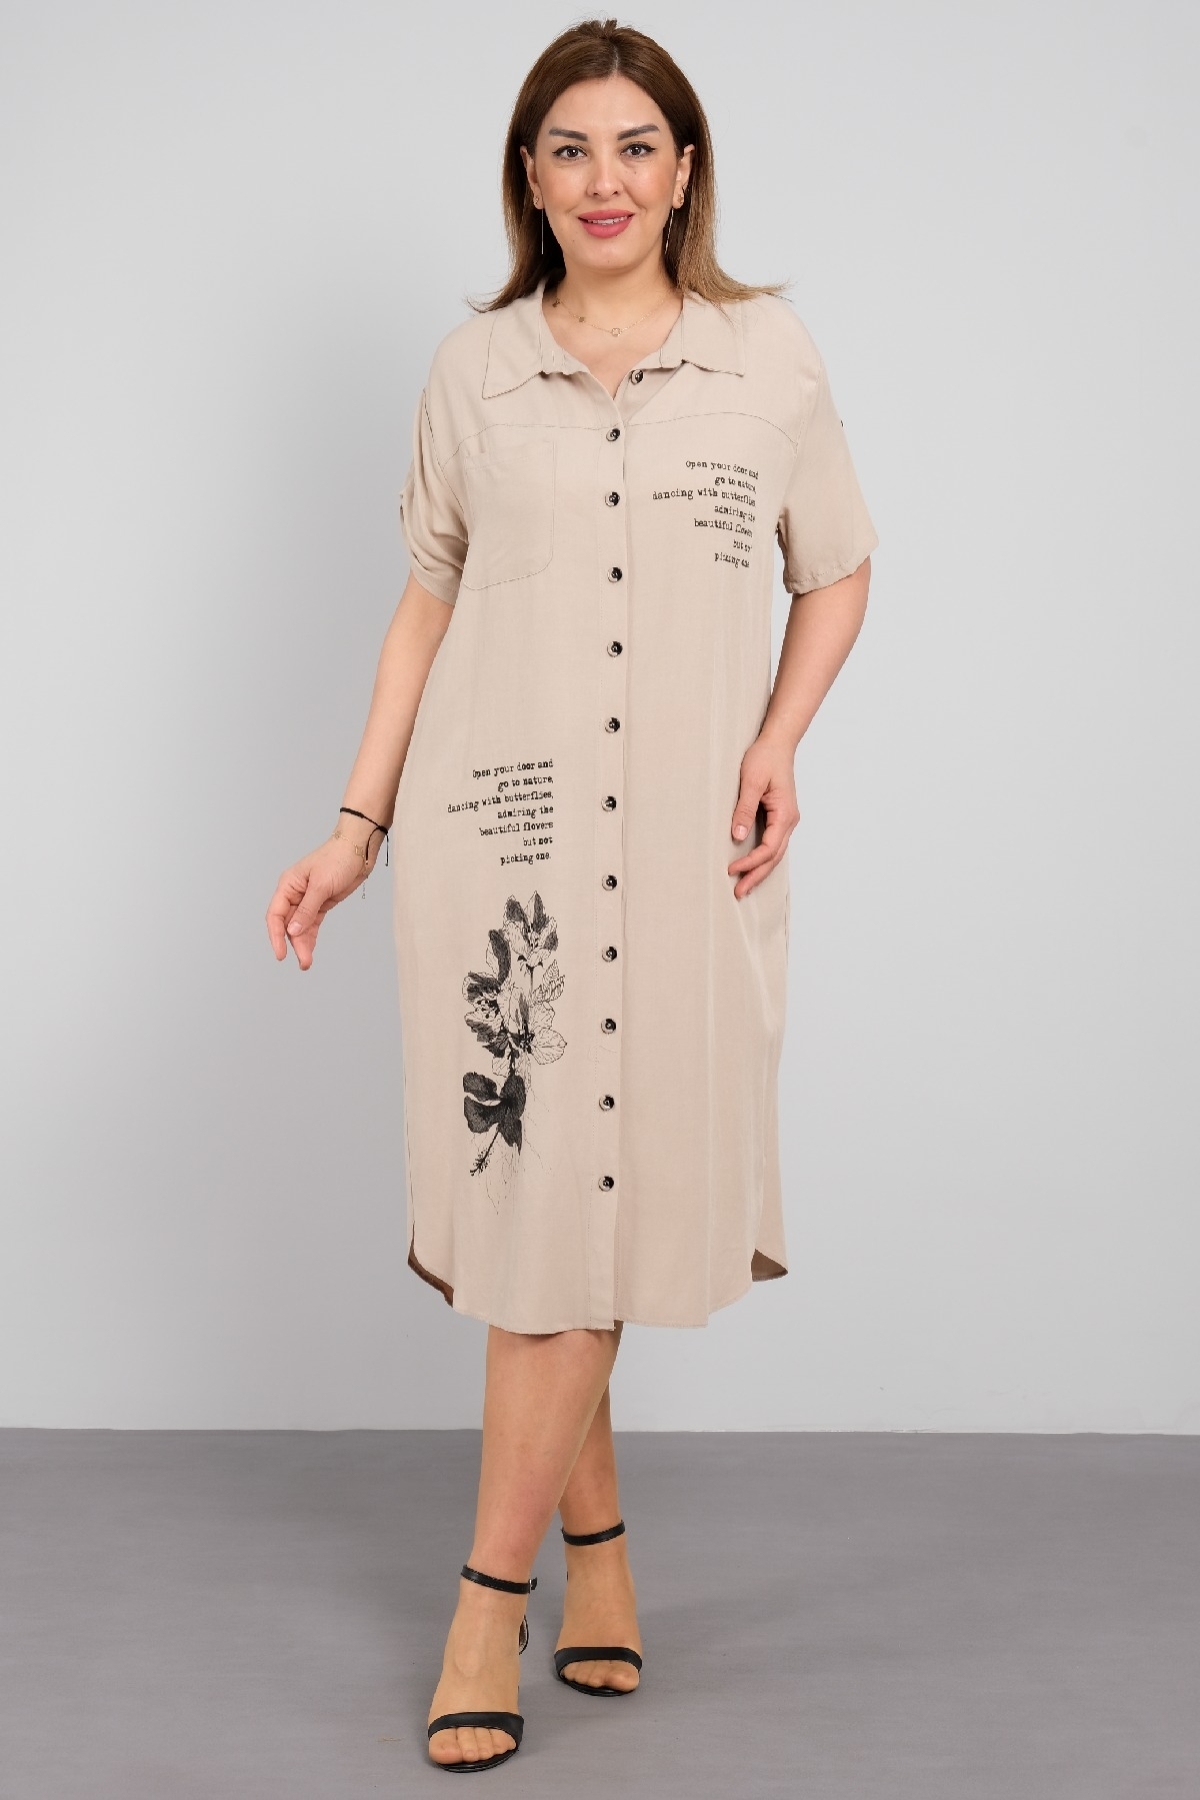 Battal beden desenli kısa kollu kadın elbise. Önden düğmeli, diz altı şık elbise.